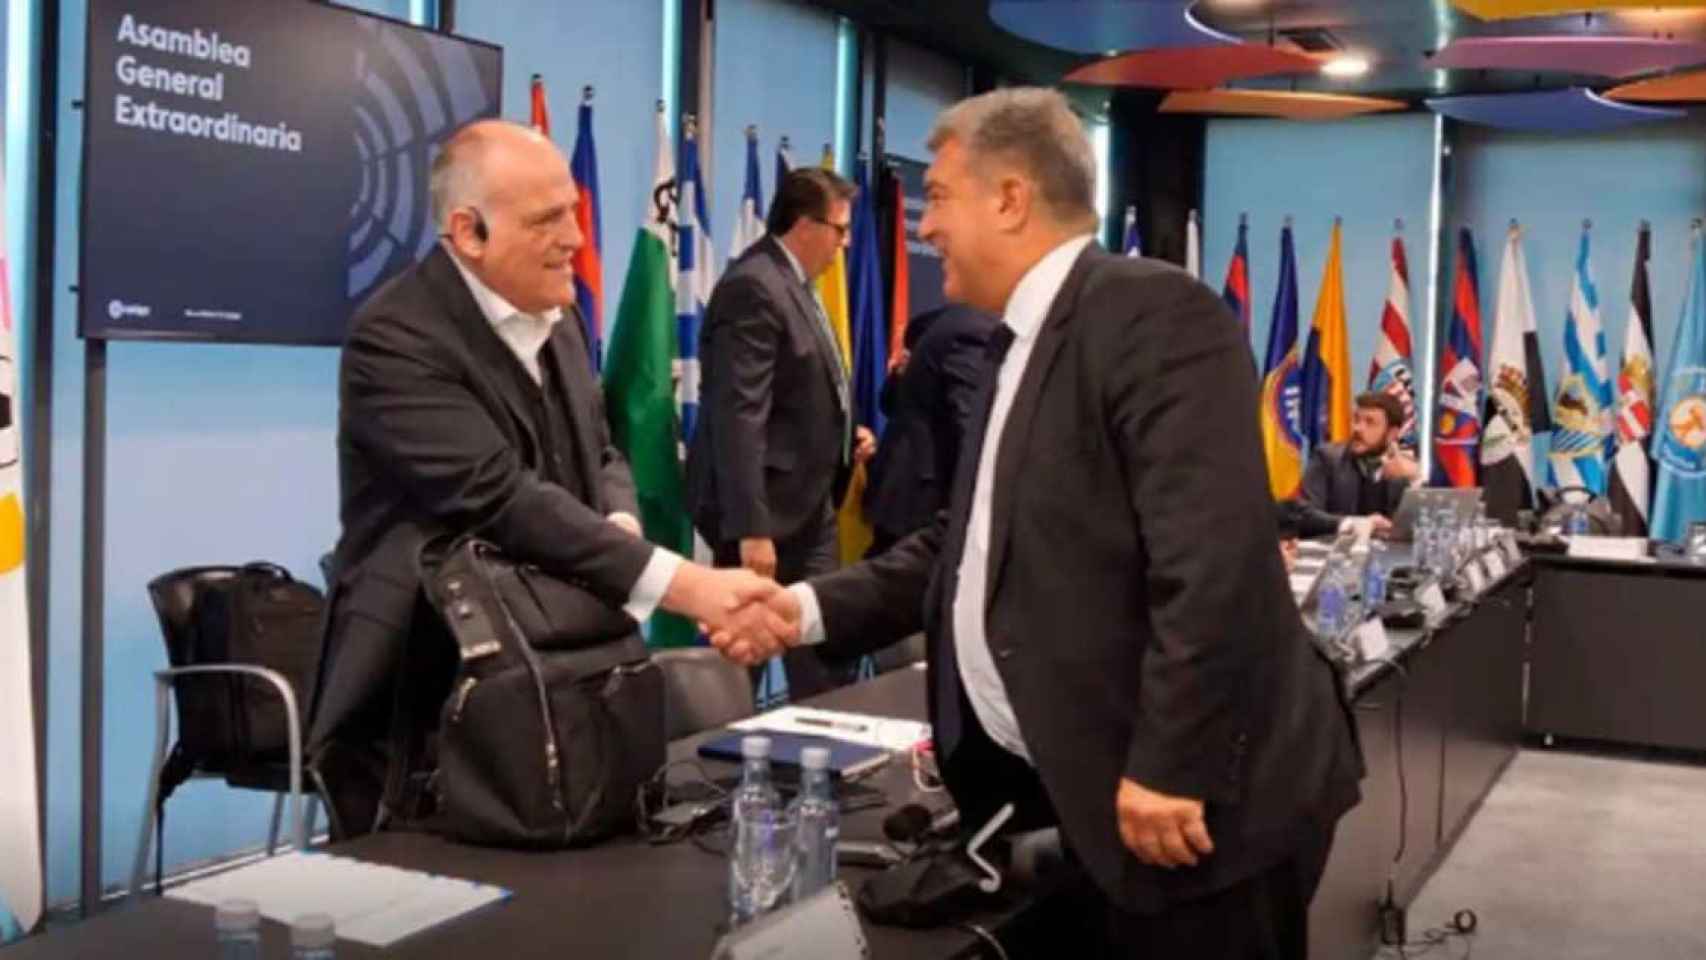 Javier Tebas saluda a Joan Laporta en la Asamblea General Extraodinaria de la Liga